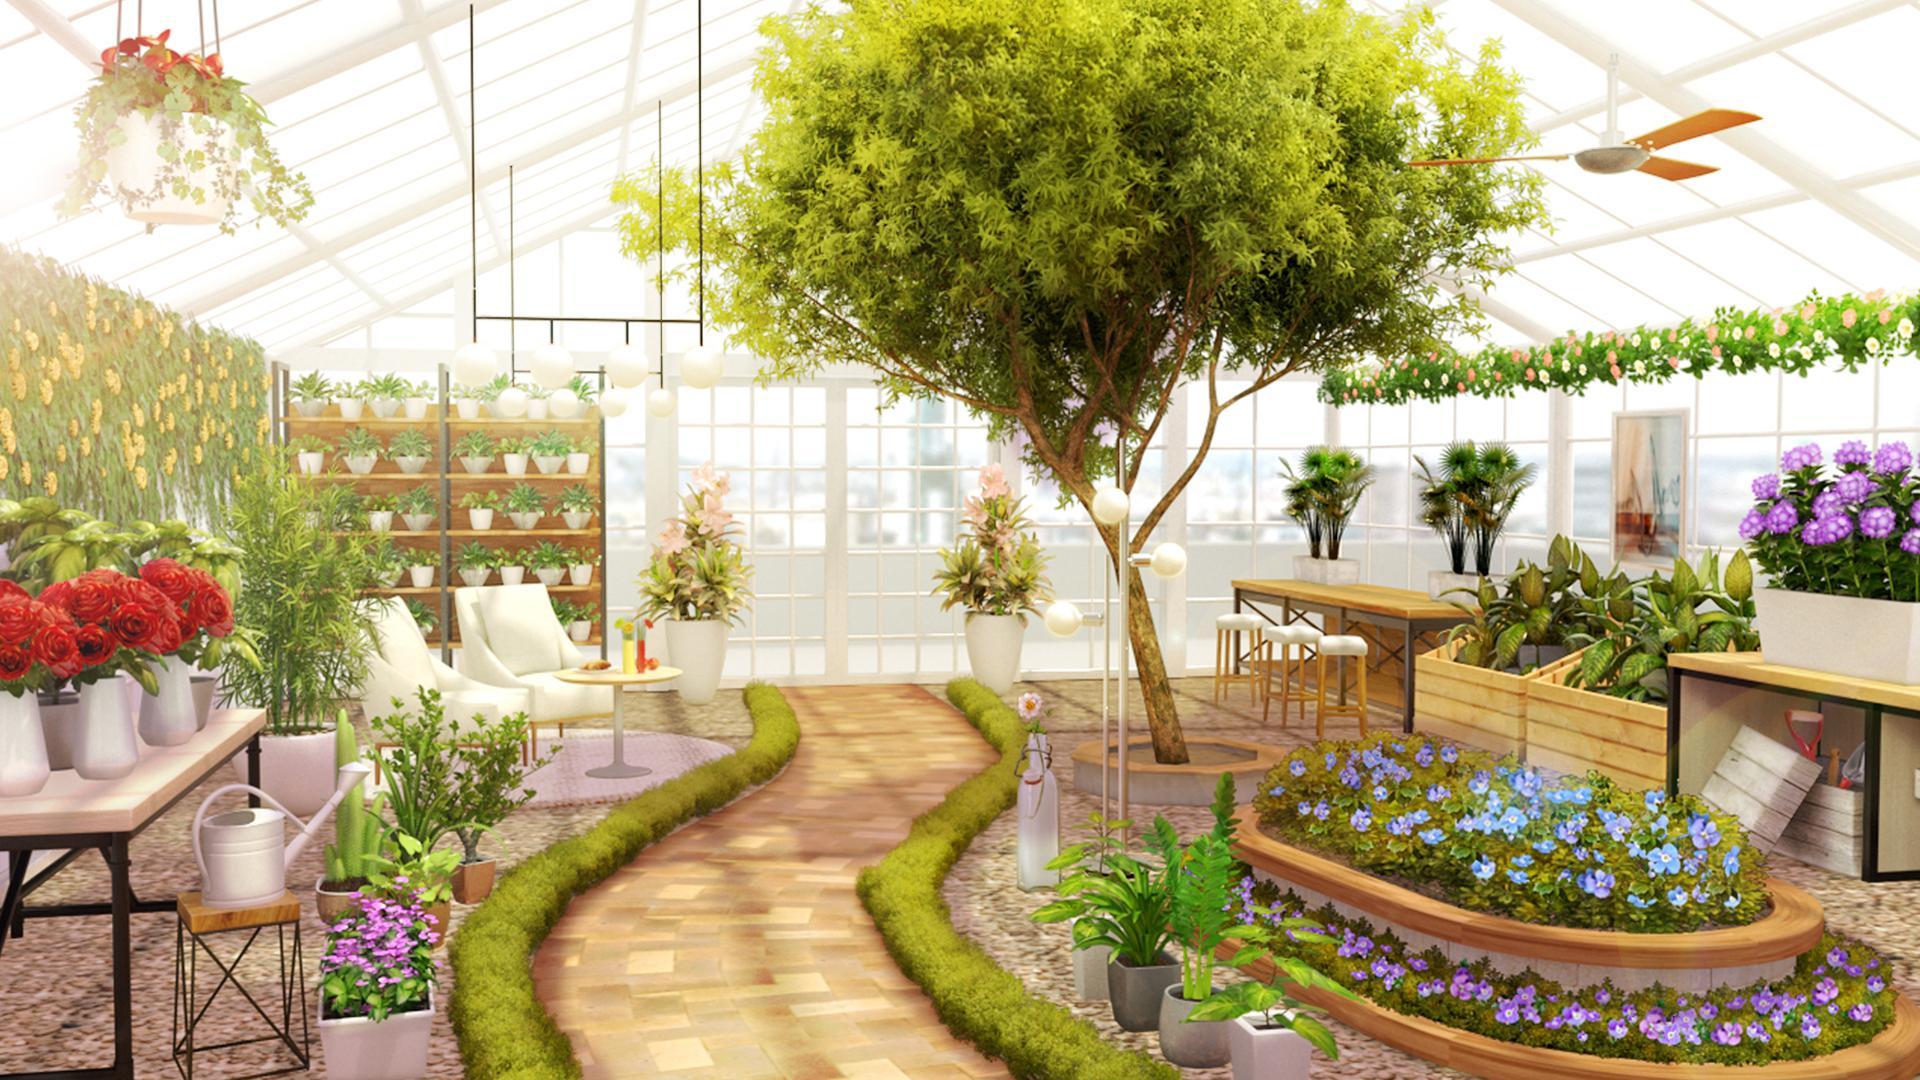 Home Design : My Dream Garden 1.21.0 Screenshot 2